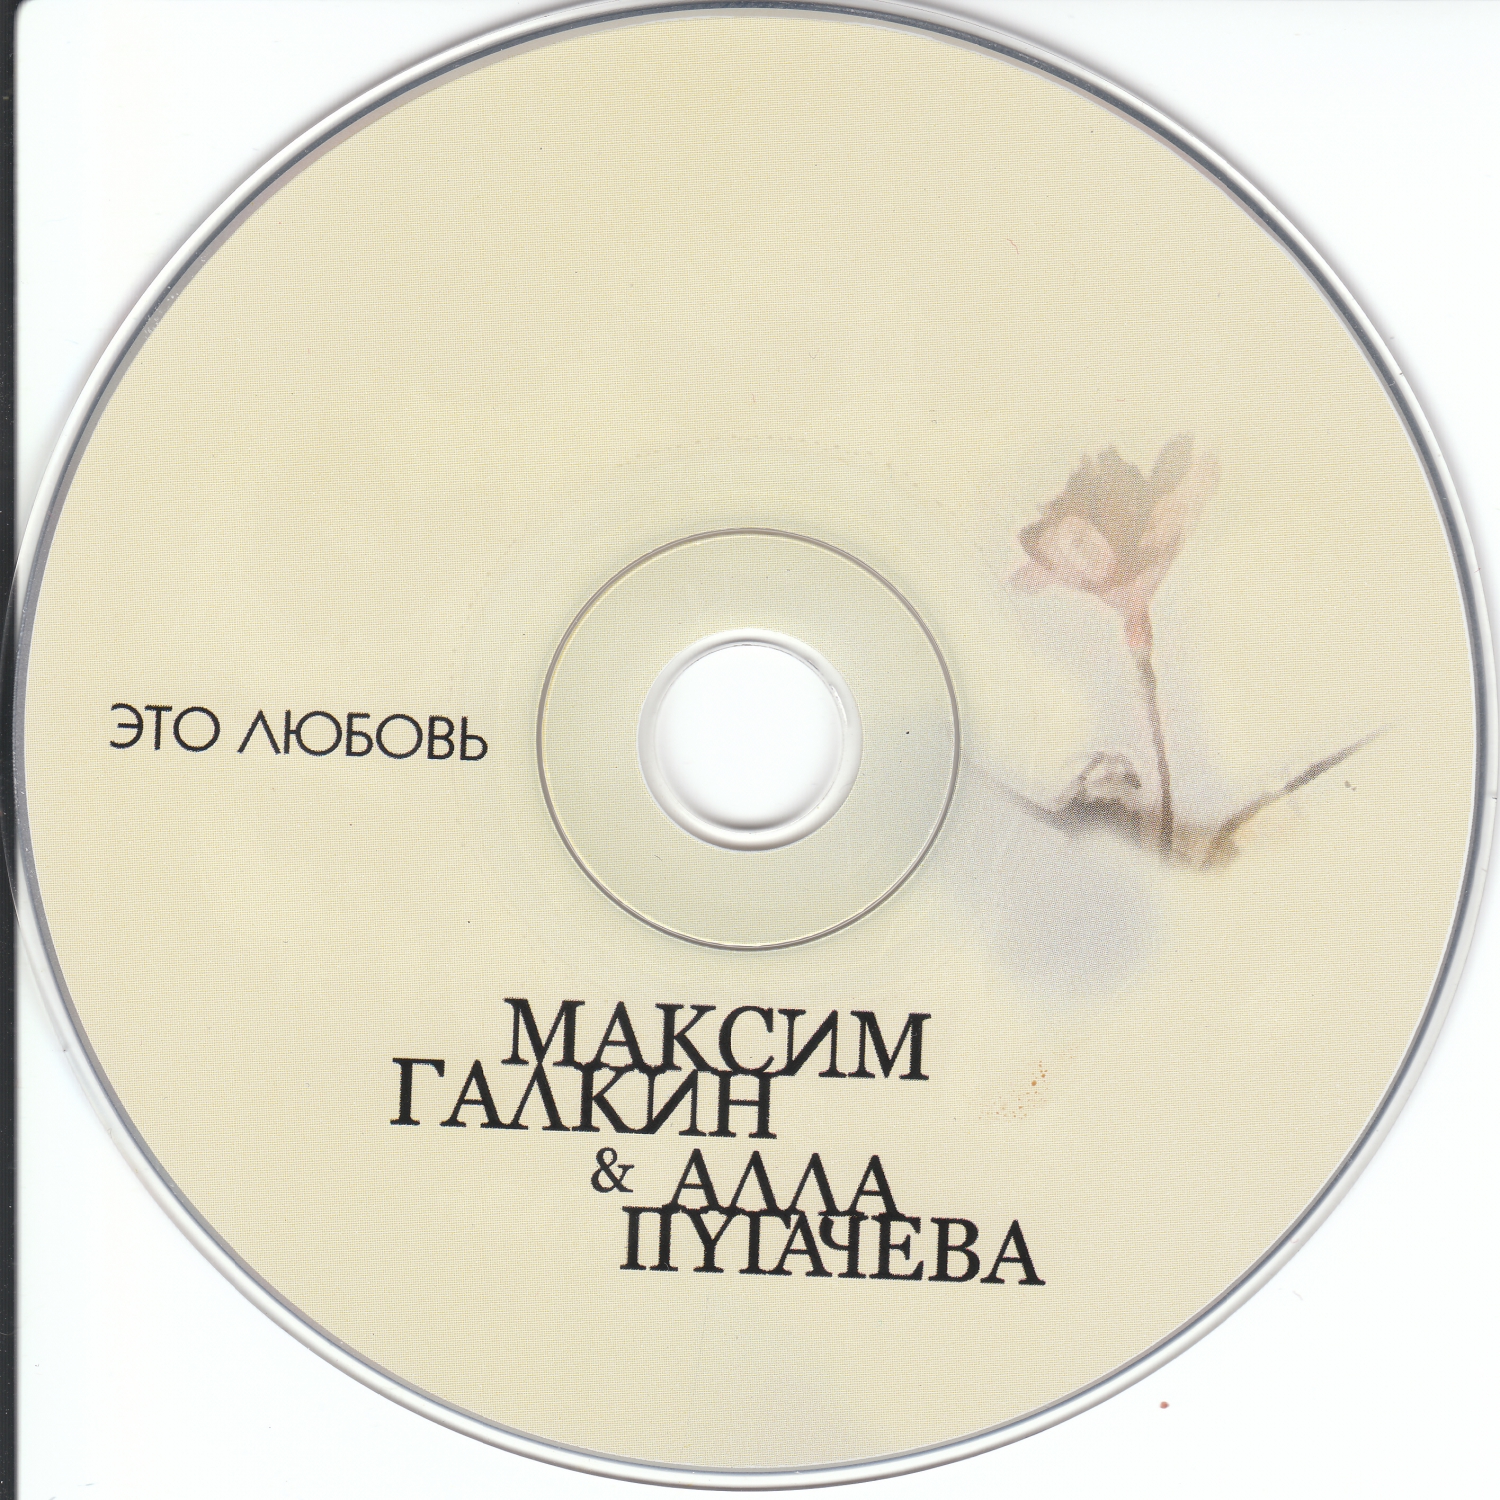 Tony Igy AsTRonoMia - (ADINOCHKA Remix) Sambyr  хит лета 2010-2011 - Самый реальный клубняк 2011 года - 123